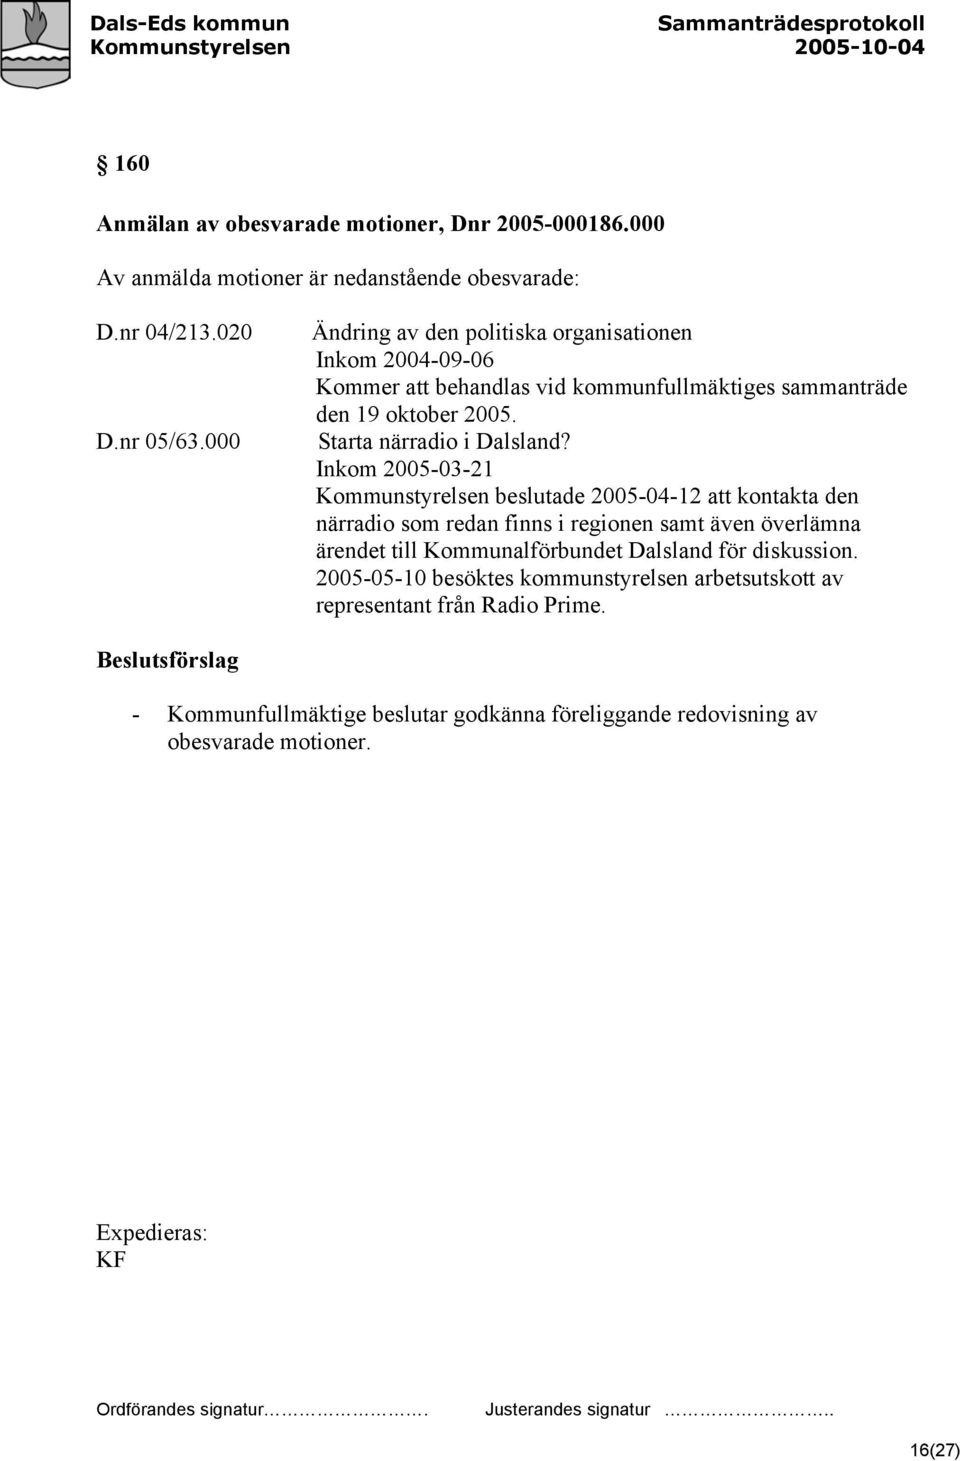 Inkom 2005-03-21 Kommunstyrelsen beslutade 2005-04-12 att kontakta den närradio som redan finns i regionen samt även överlämna ärendet till Kommunalförbundet Dalsland